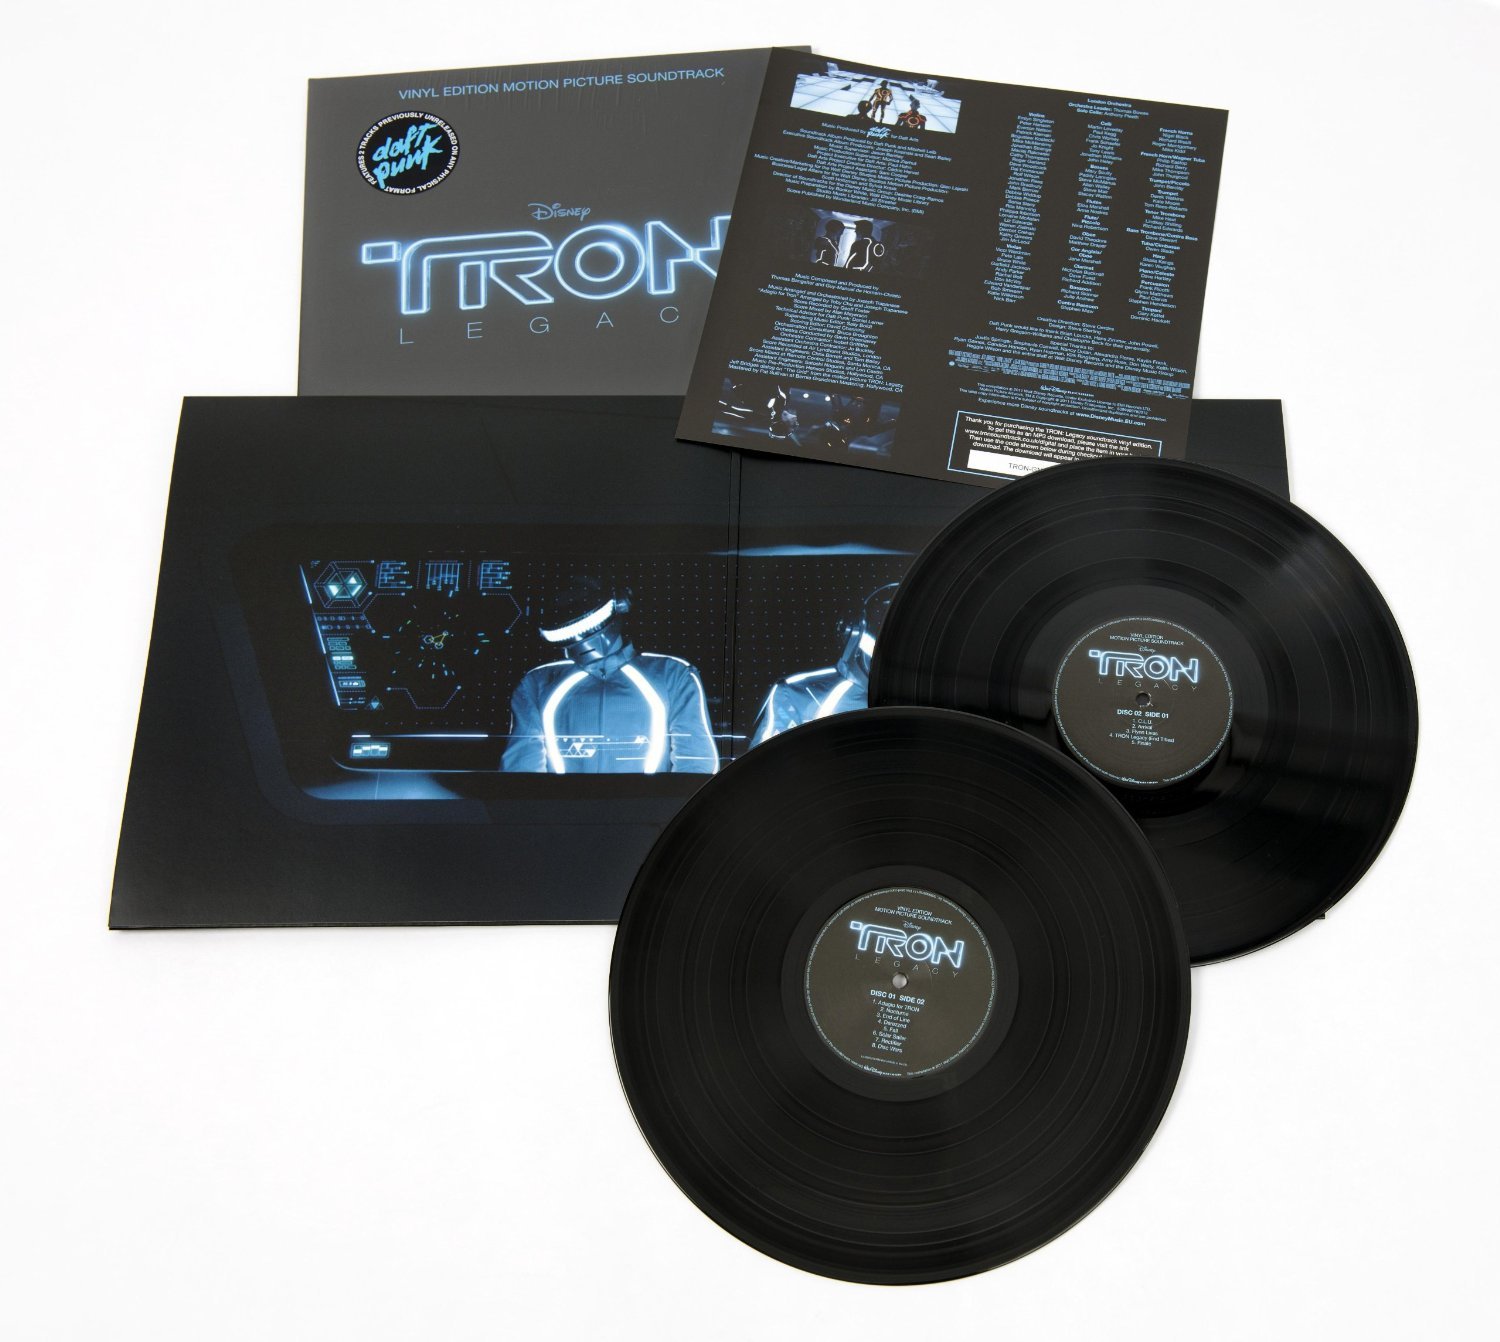 트론: 새로운 시작 영화음악 (Tron: Legacy OST by Daft Punk) [2LP] 